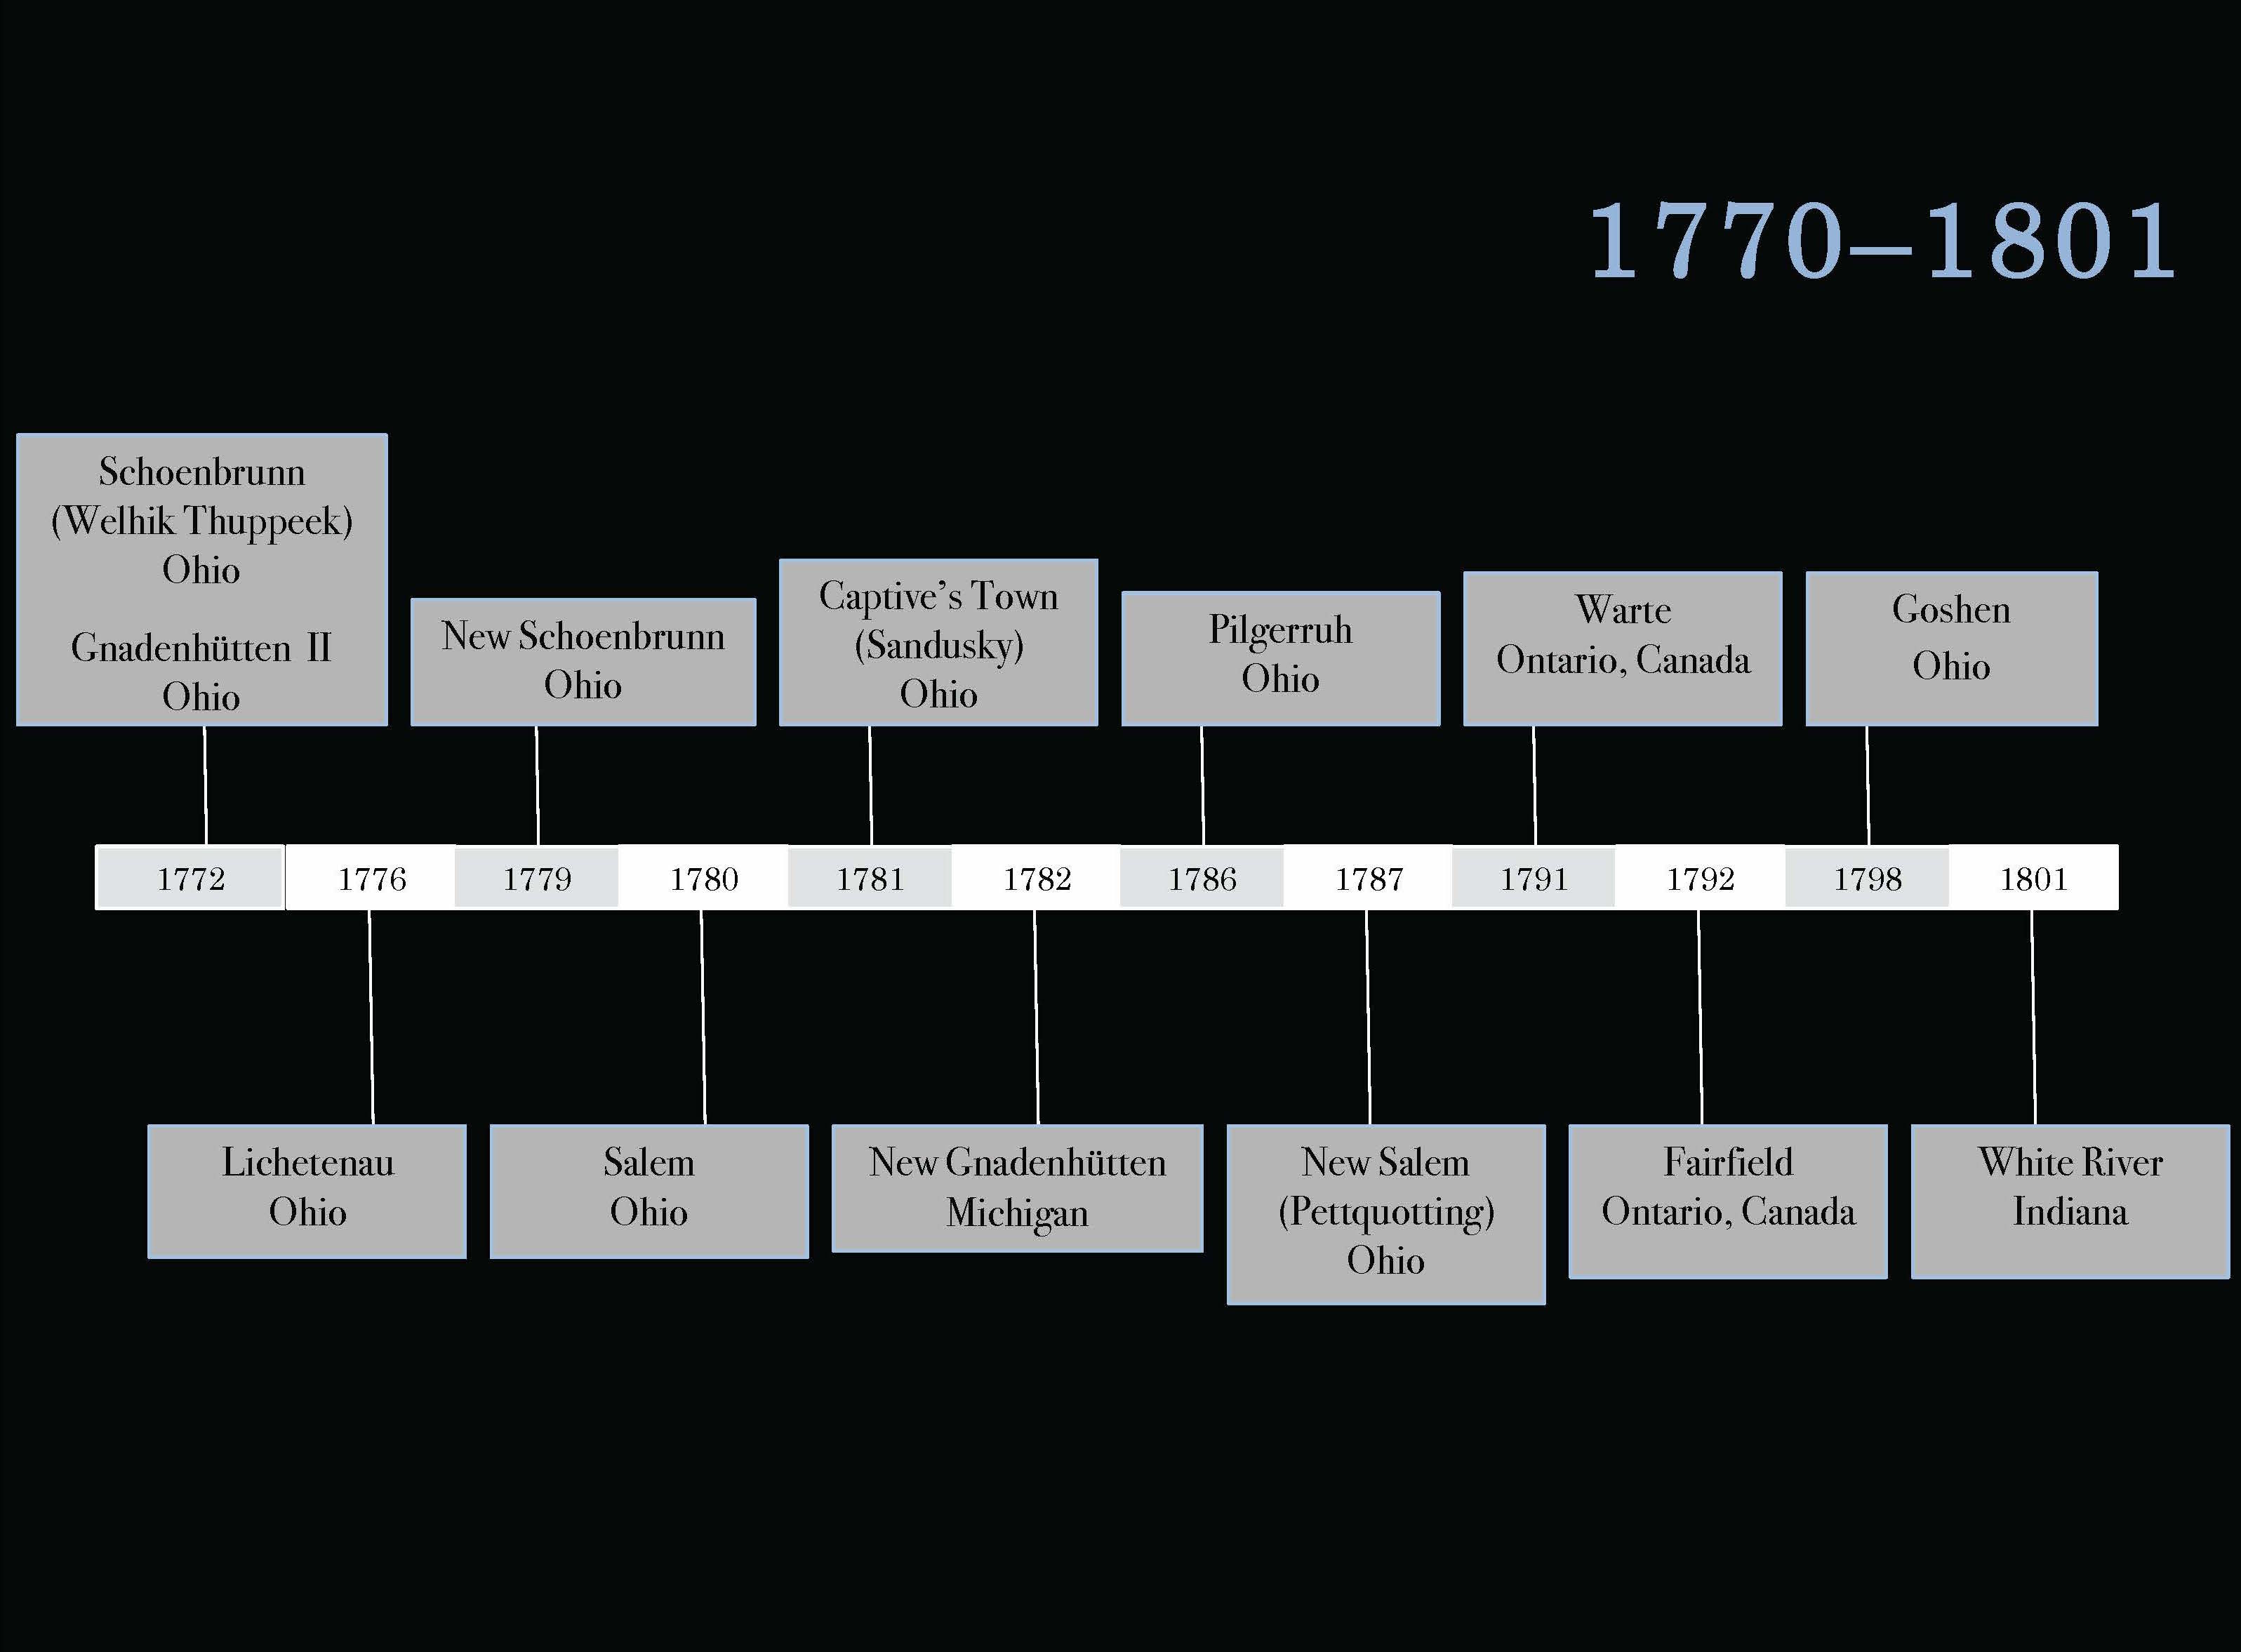 Moravian Missions Timeline 1770-1801.jpg